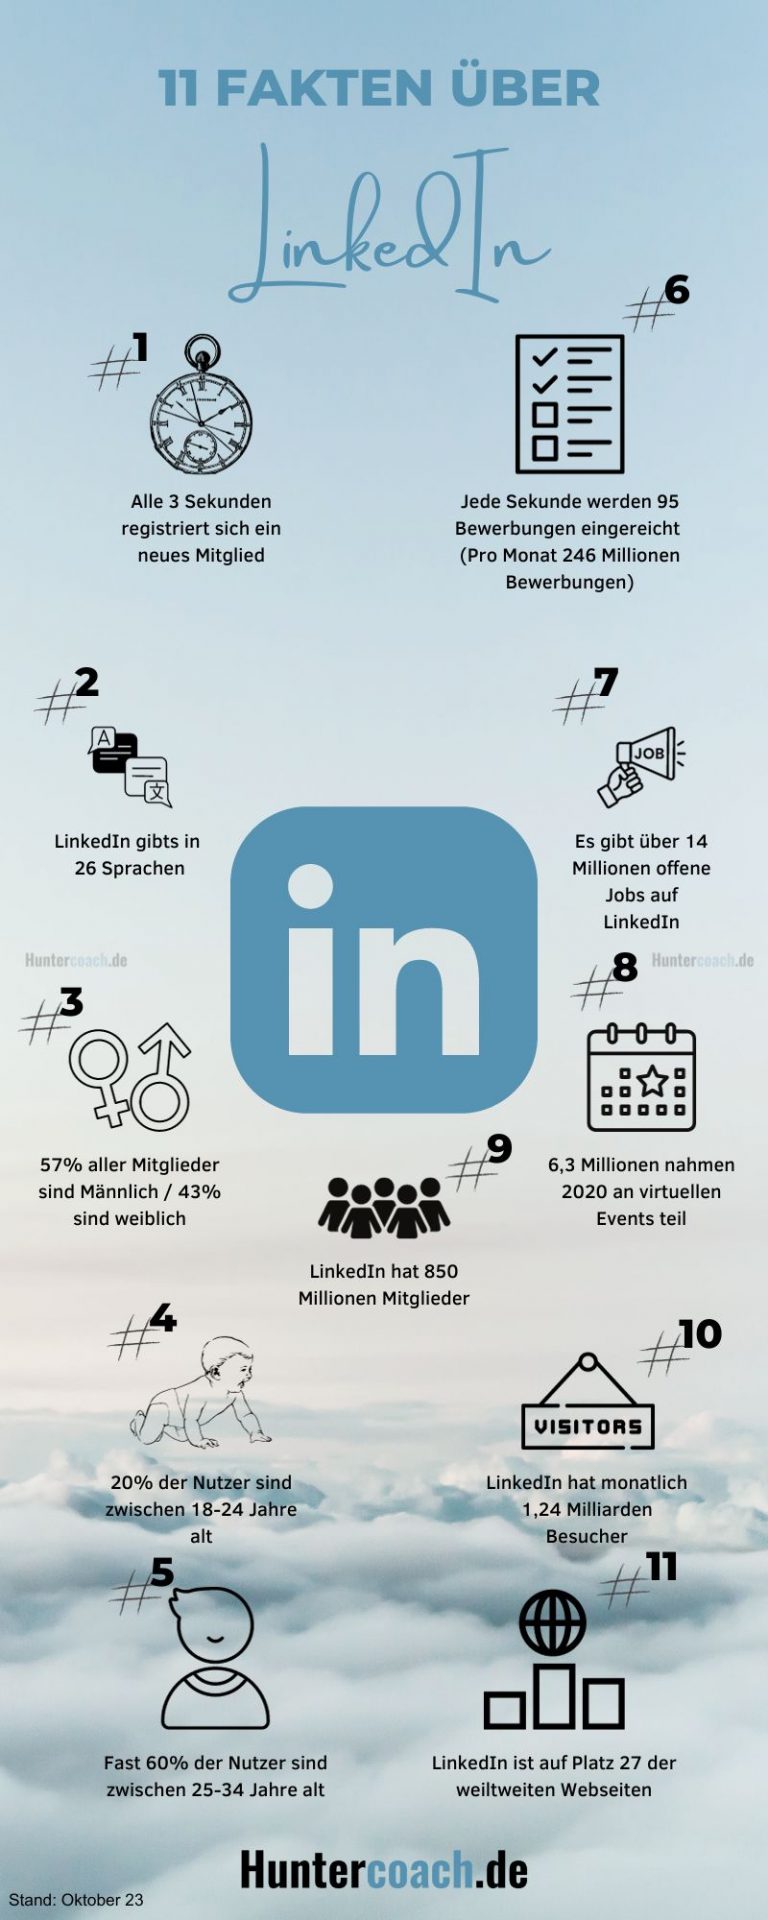 Hier sehen Sie eine Grafik über 11 spannende Fakten zu der Plattform LinkedIn